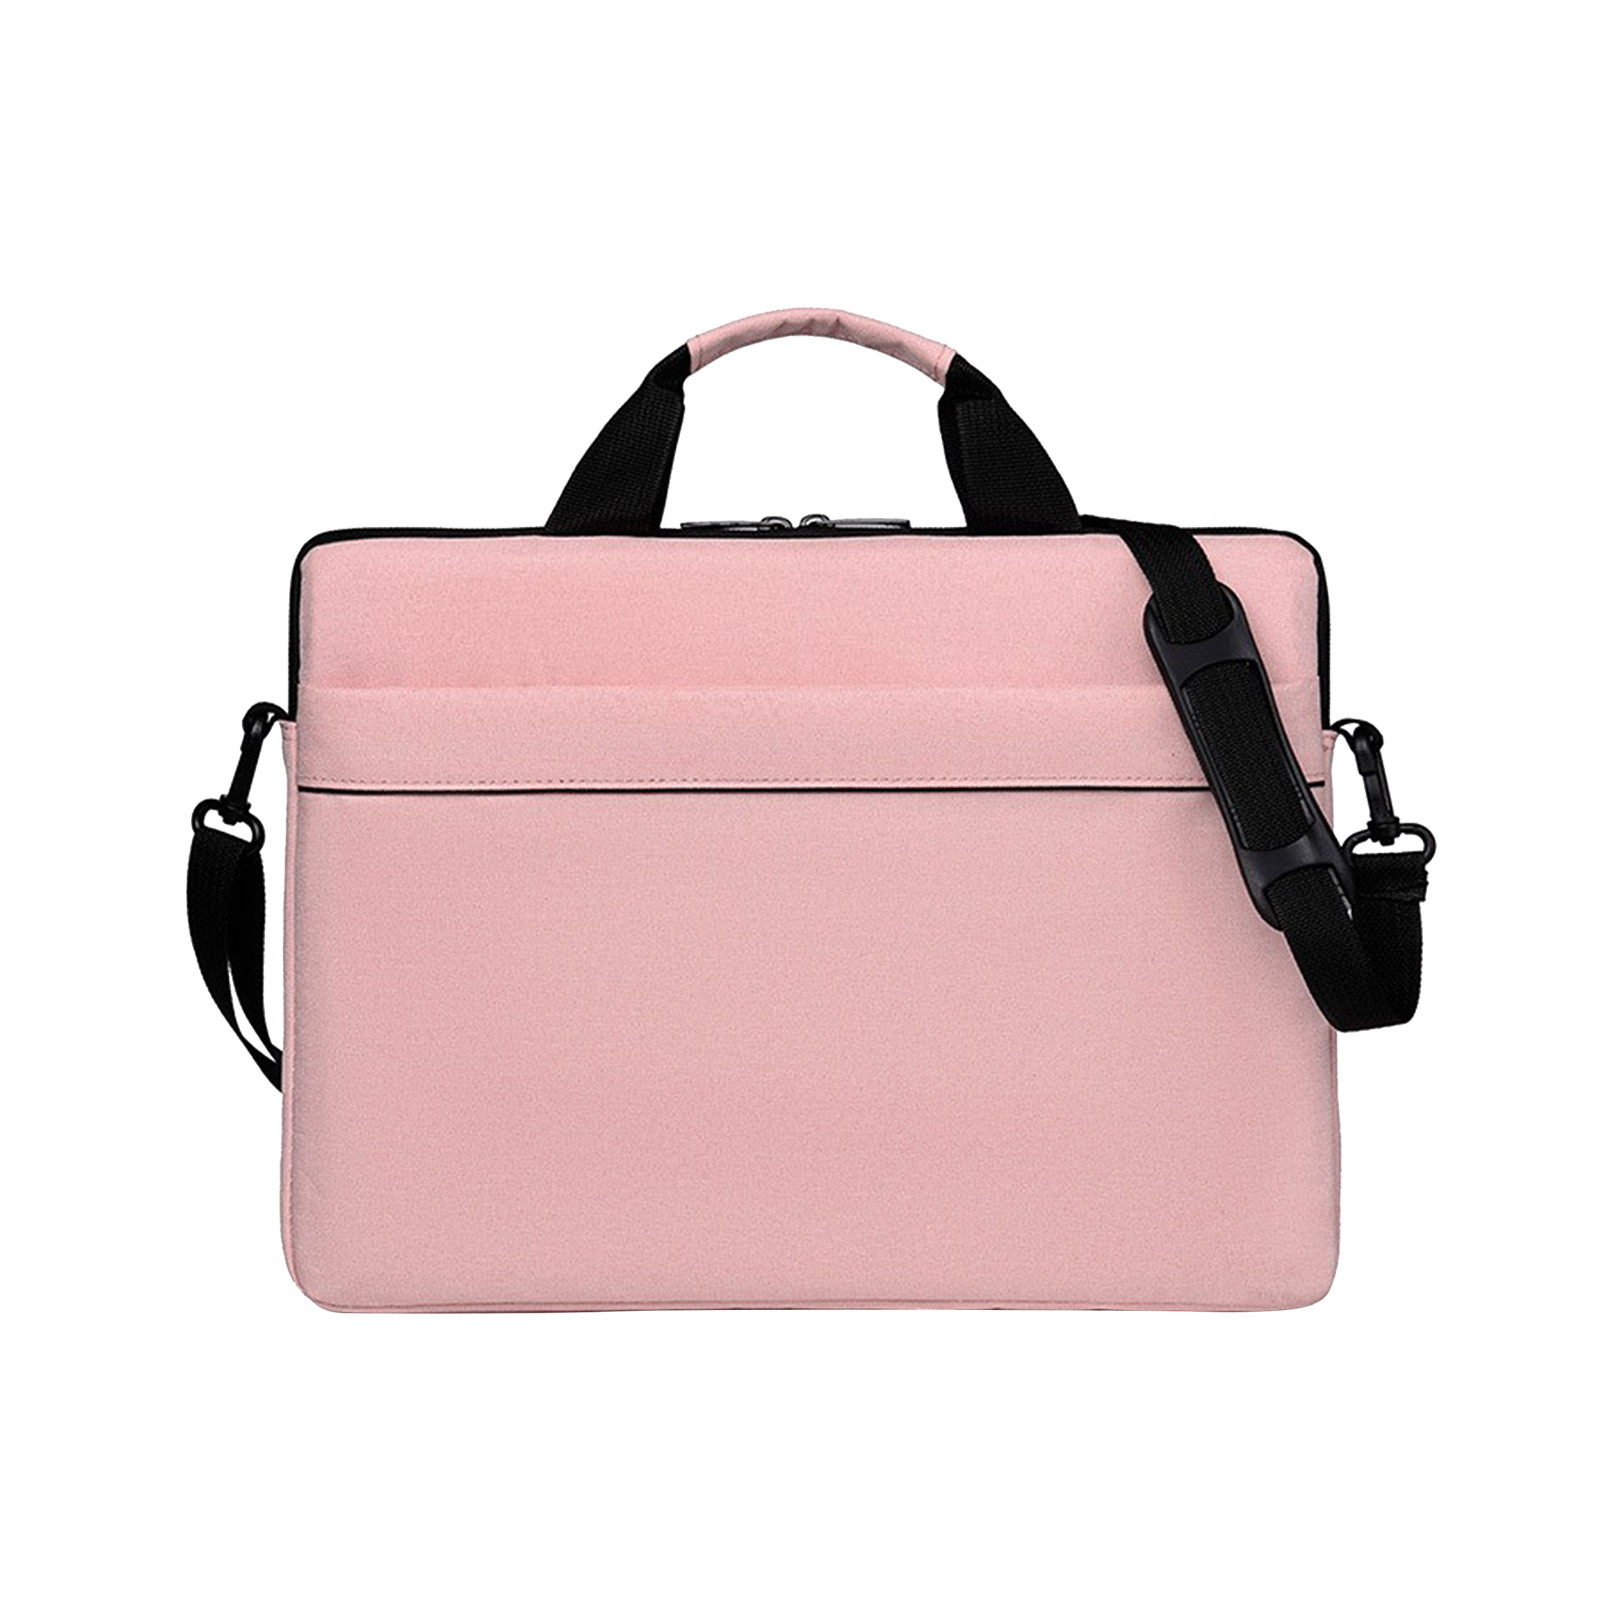 Wovilon Laptop Bag 15.6 Inch Briefcase Shoulder Bag Water Repellent Laptop Bag Satchel Tablet Bussiness Carrying Handbag Laptop Sleeve for Women and Men-Pink - image 1 of 7